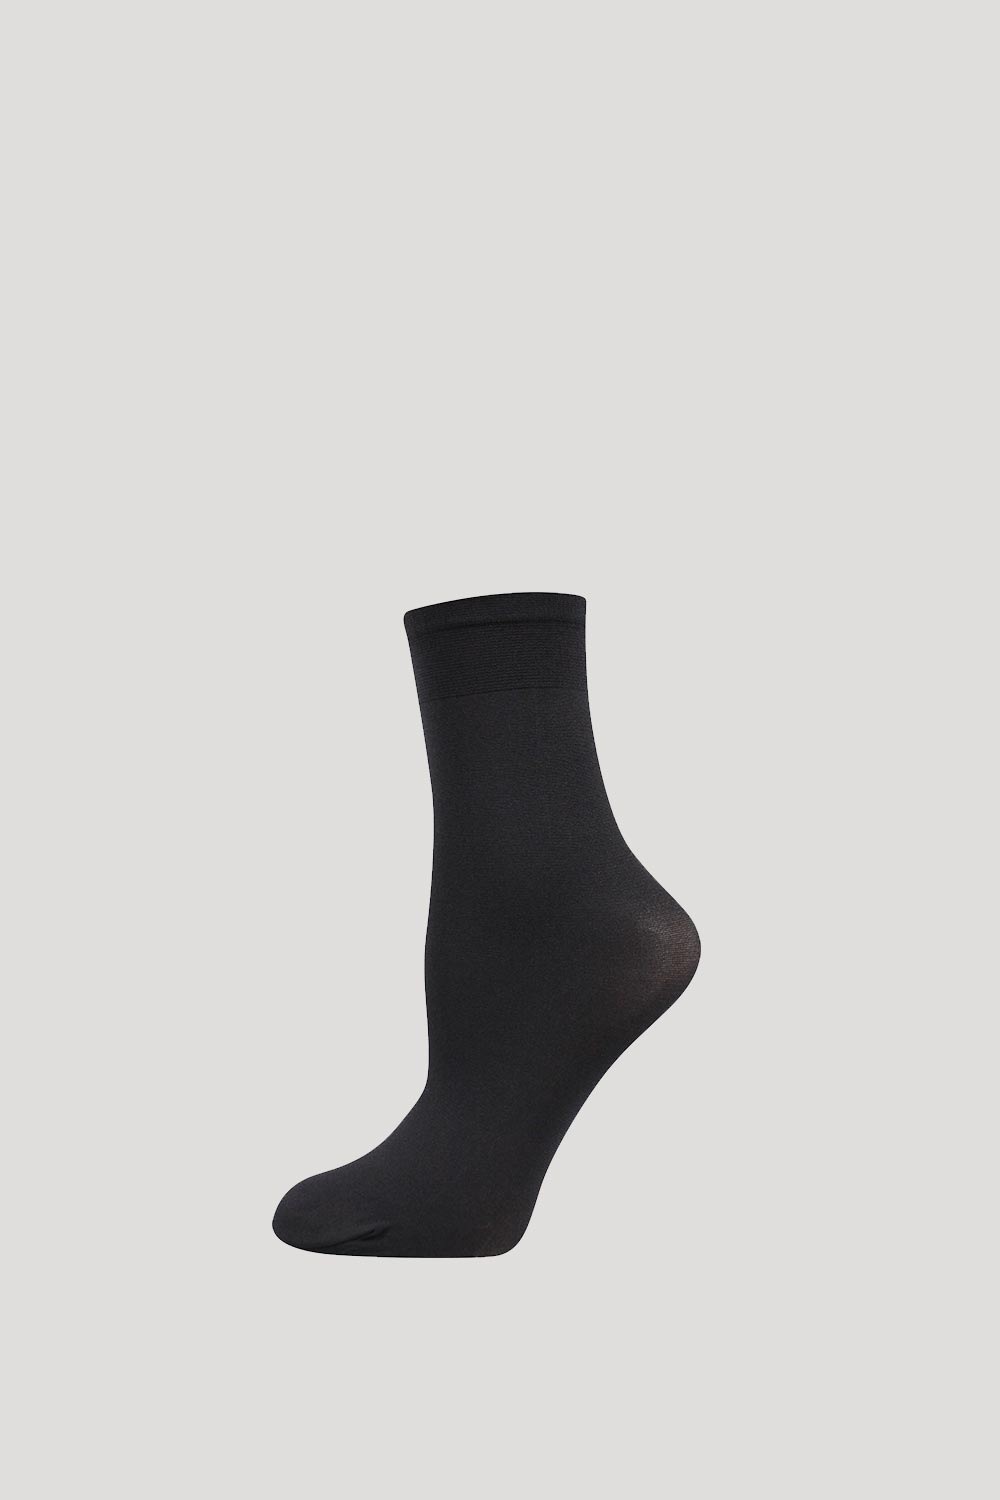 Silonové ponožky Micro 50 DEN | Astratex.sk